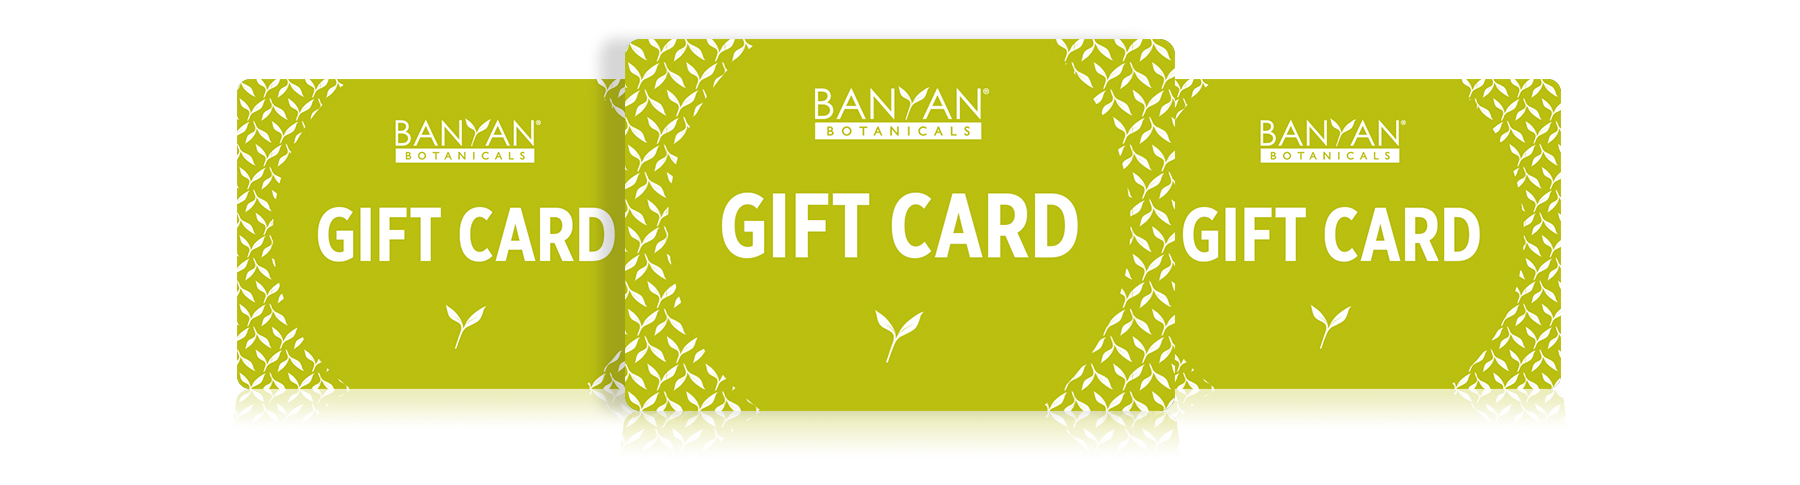 Banyan Botanicals Gift Cards